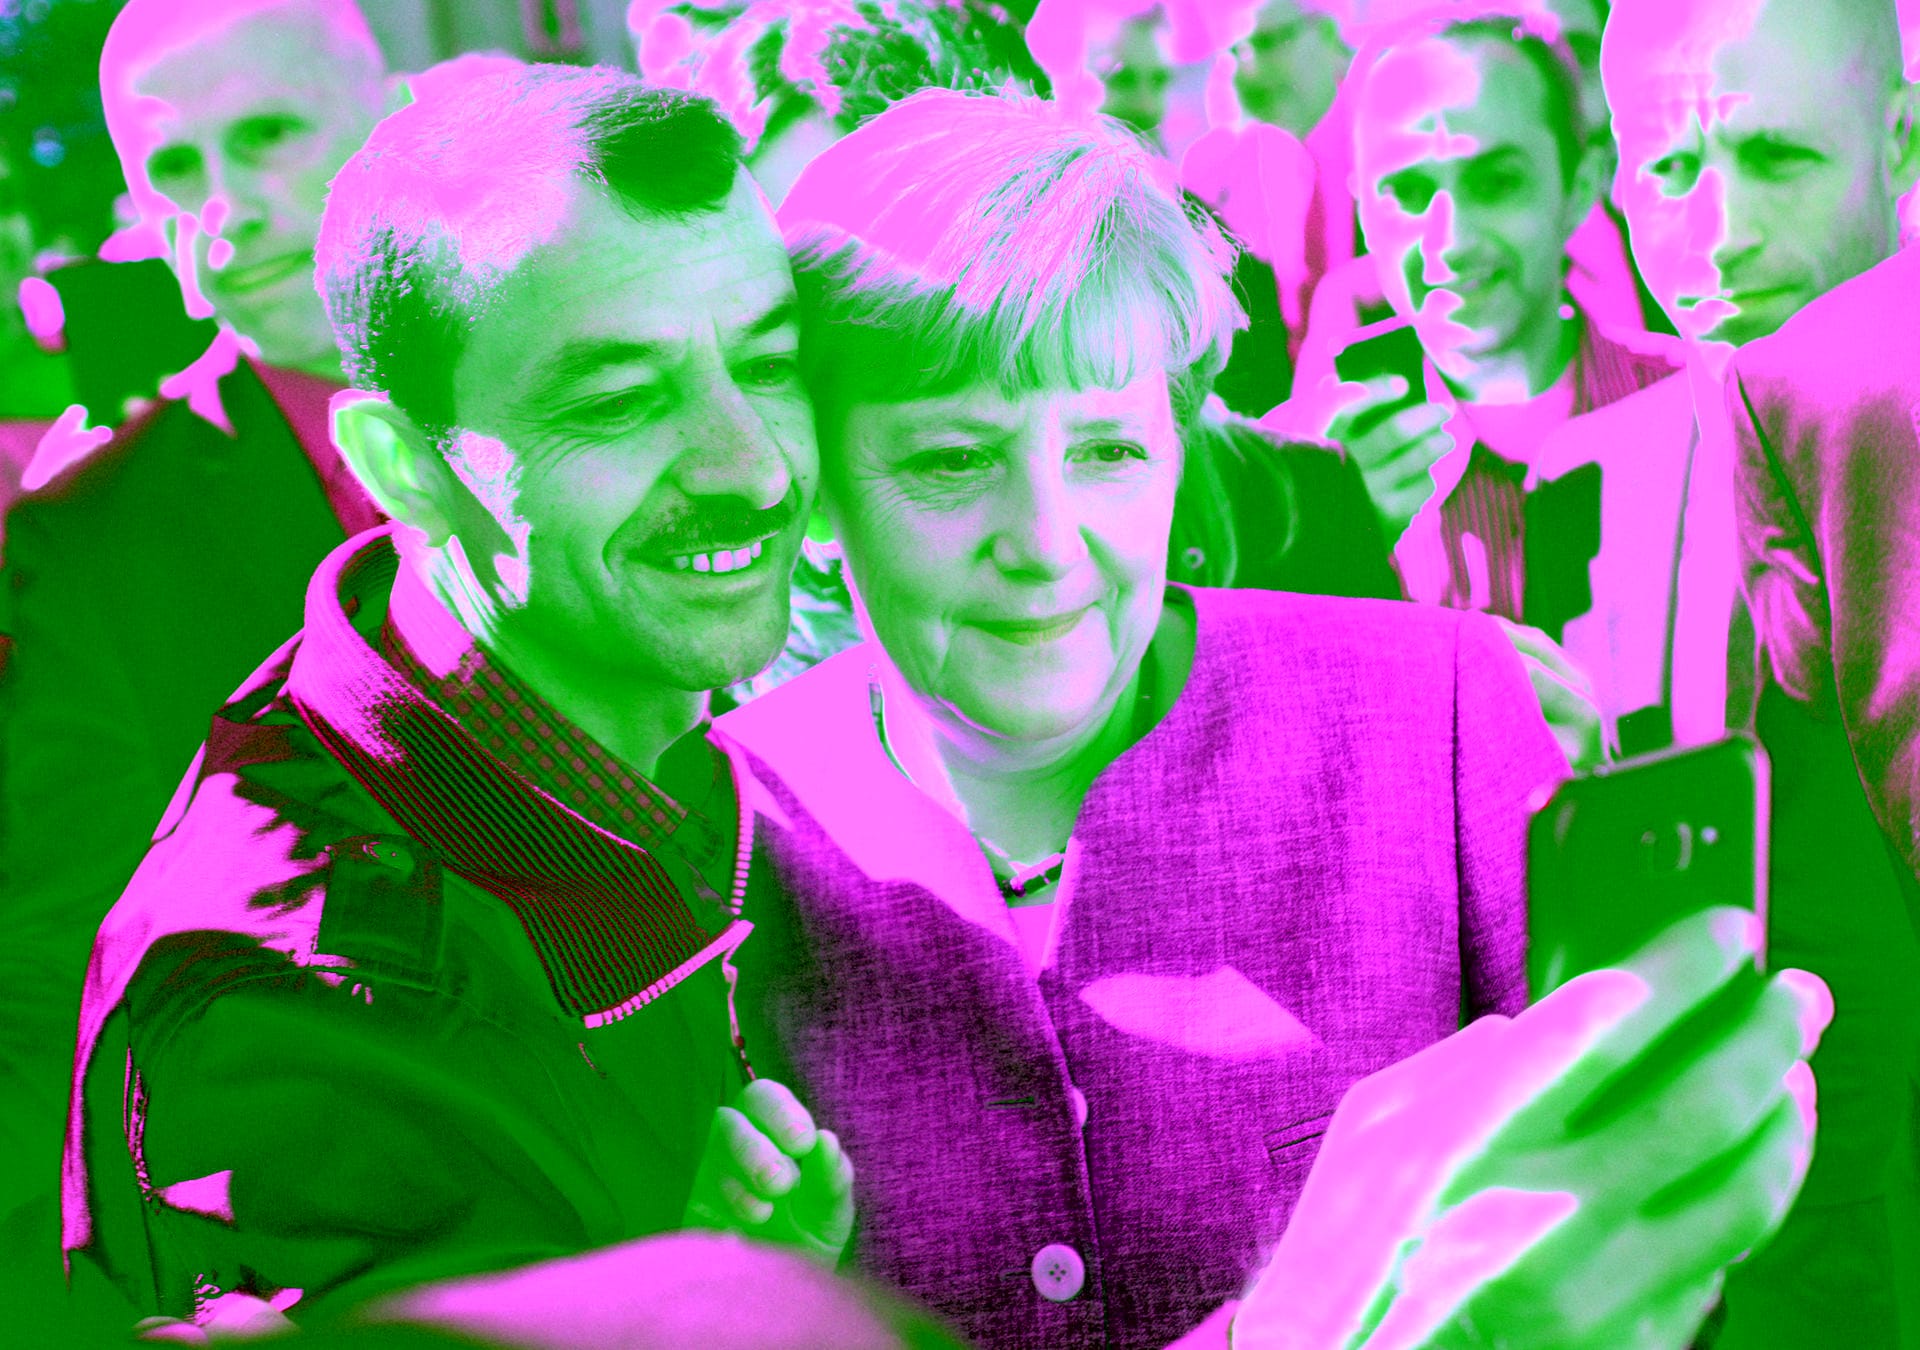 10. September 2015: Bundeskanzlerin Angela Merkel lässt sich nach dem Besuch einer Erstaufnahmeeinrichtung für Asylbewerber der Arbeiterwohlfahrt (AWO) und der Außenstelle des Bundesamtes für Migration und Flüchtlinge in Berlin-Spandau für ein Selfie zusammen mit einem Flüchtling fotografieren.